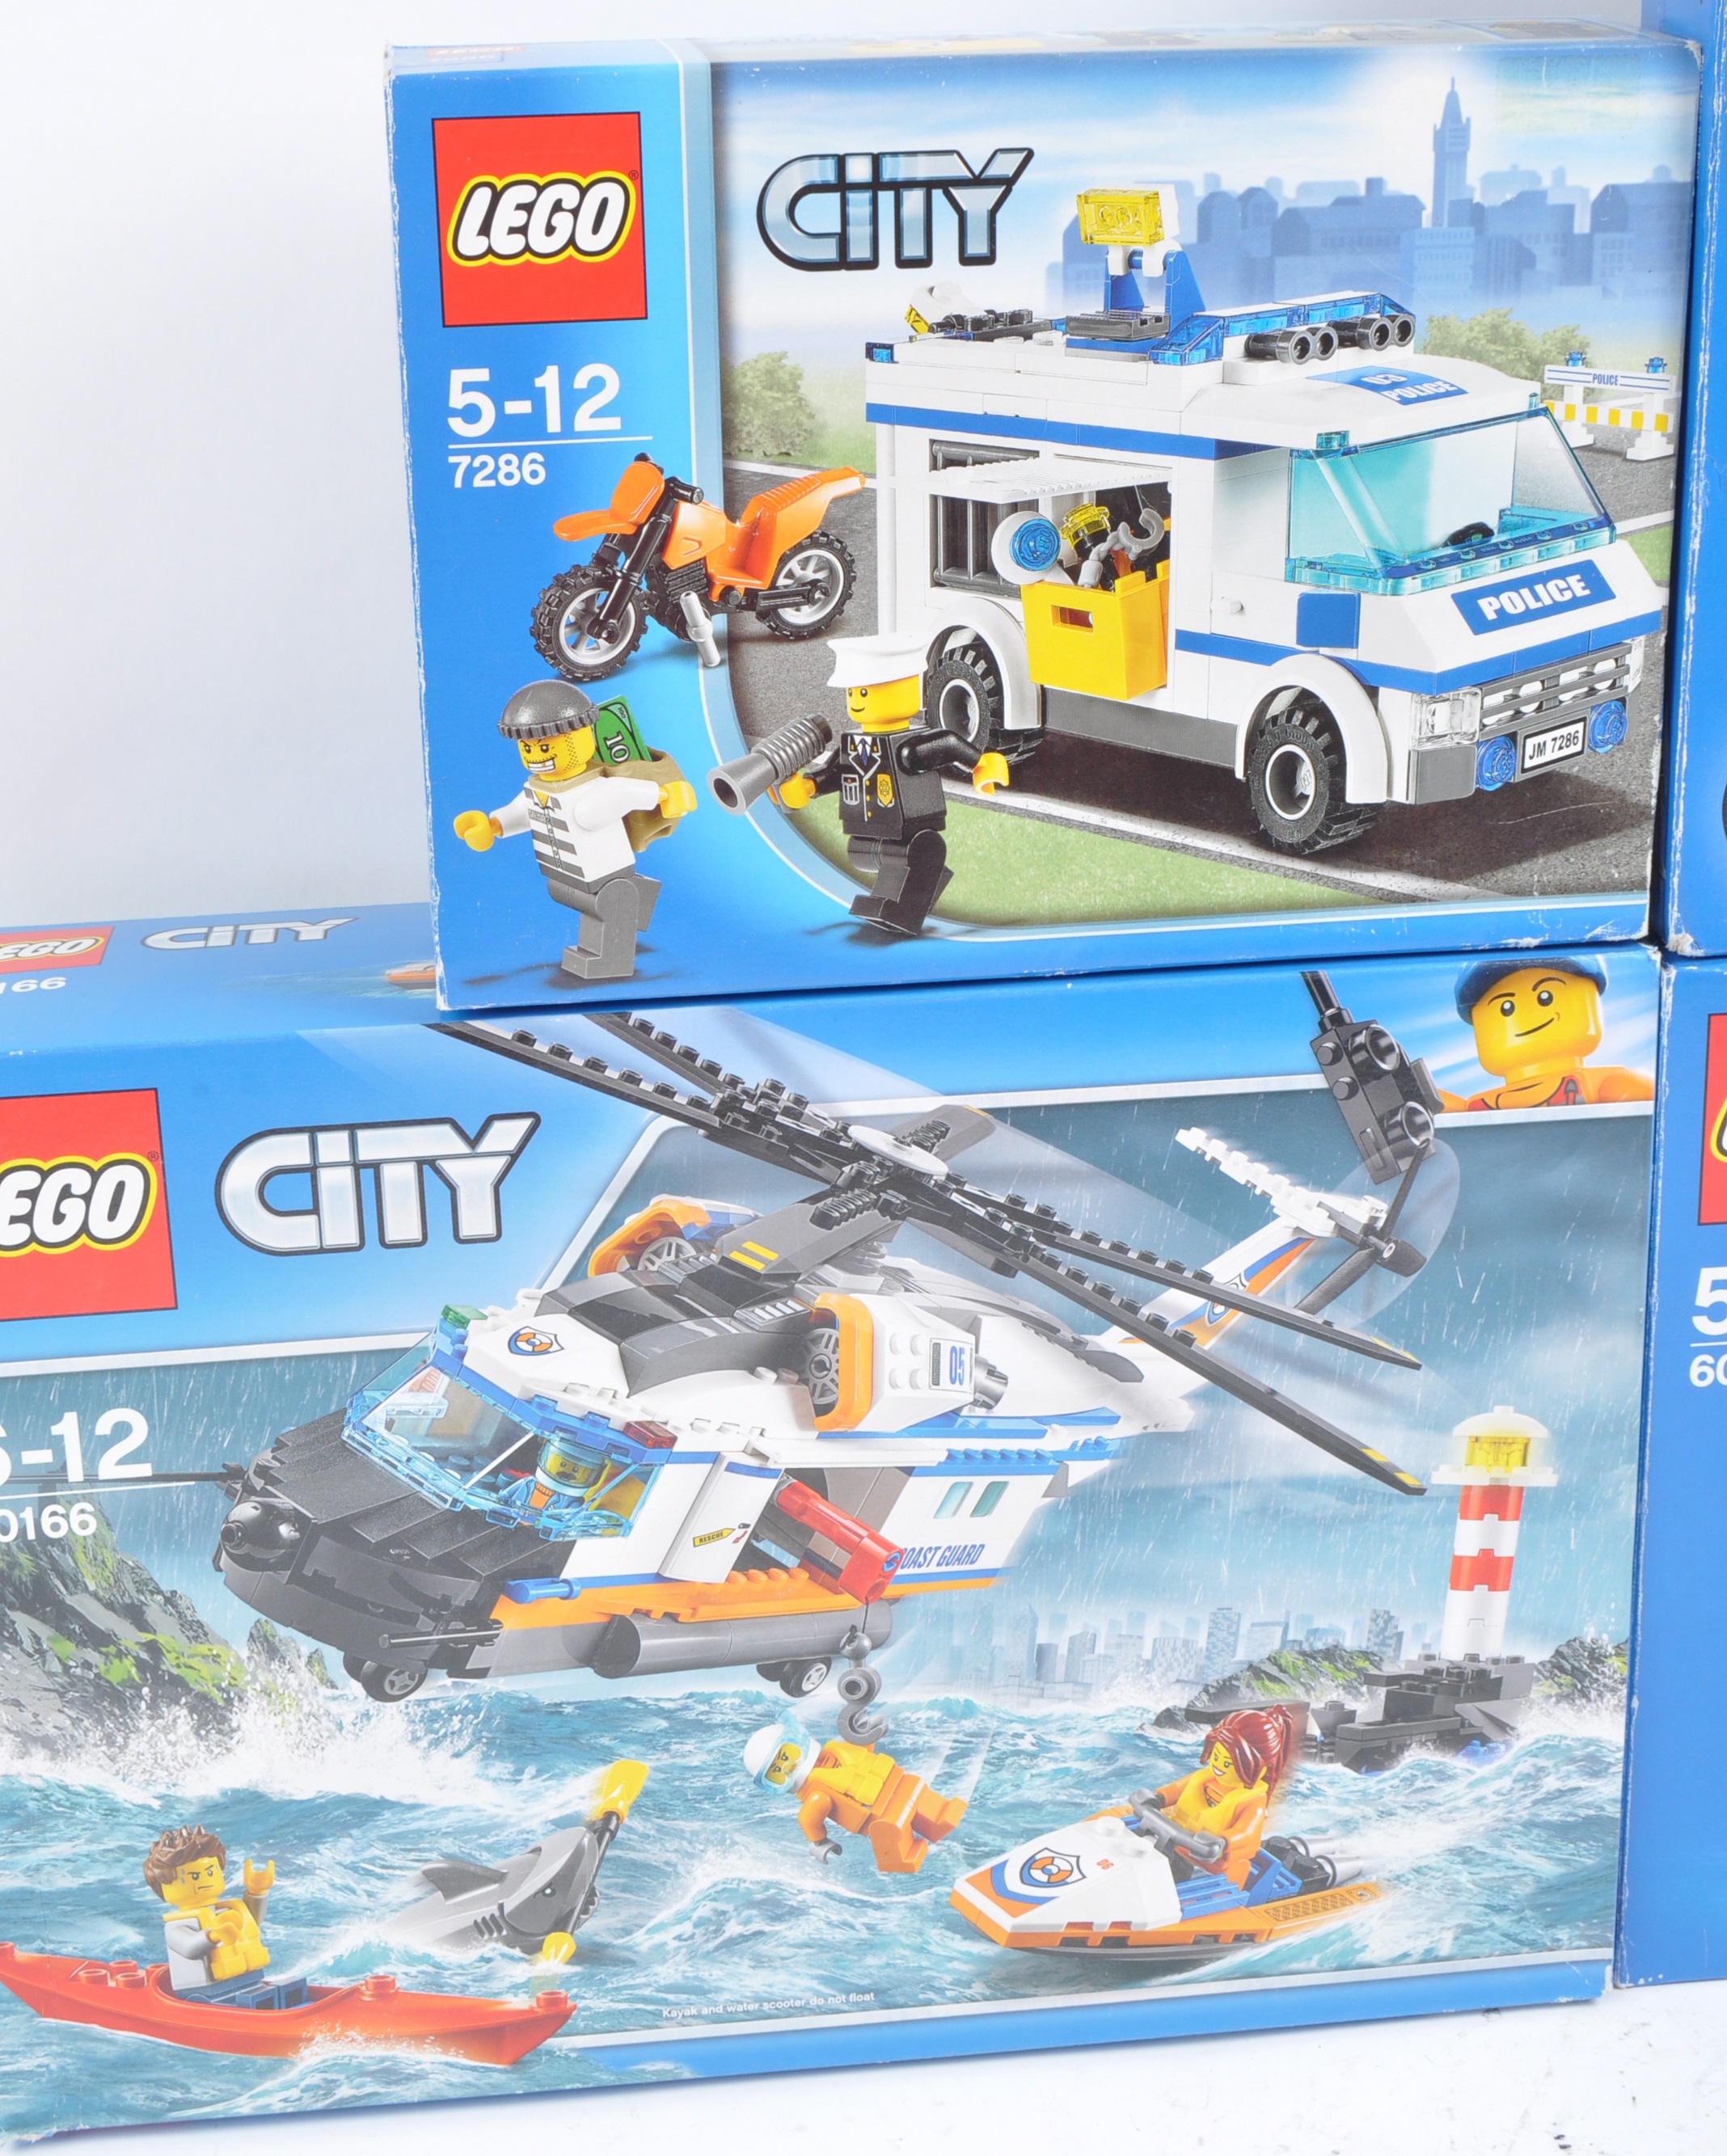 LEGO SETS - LEGO CITY - Image 3 of 5